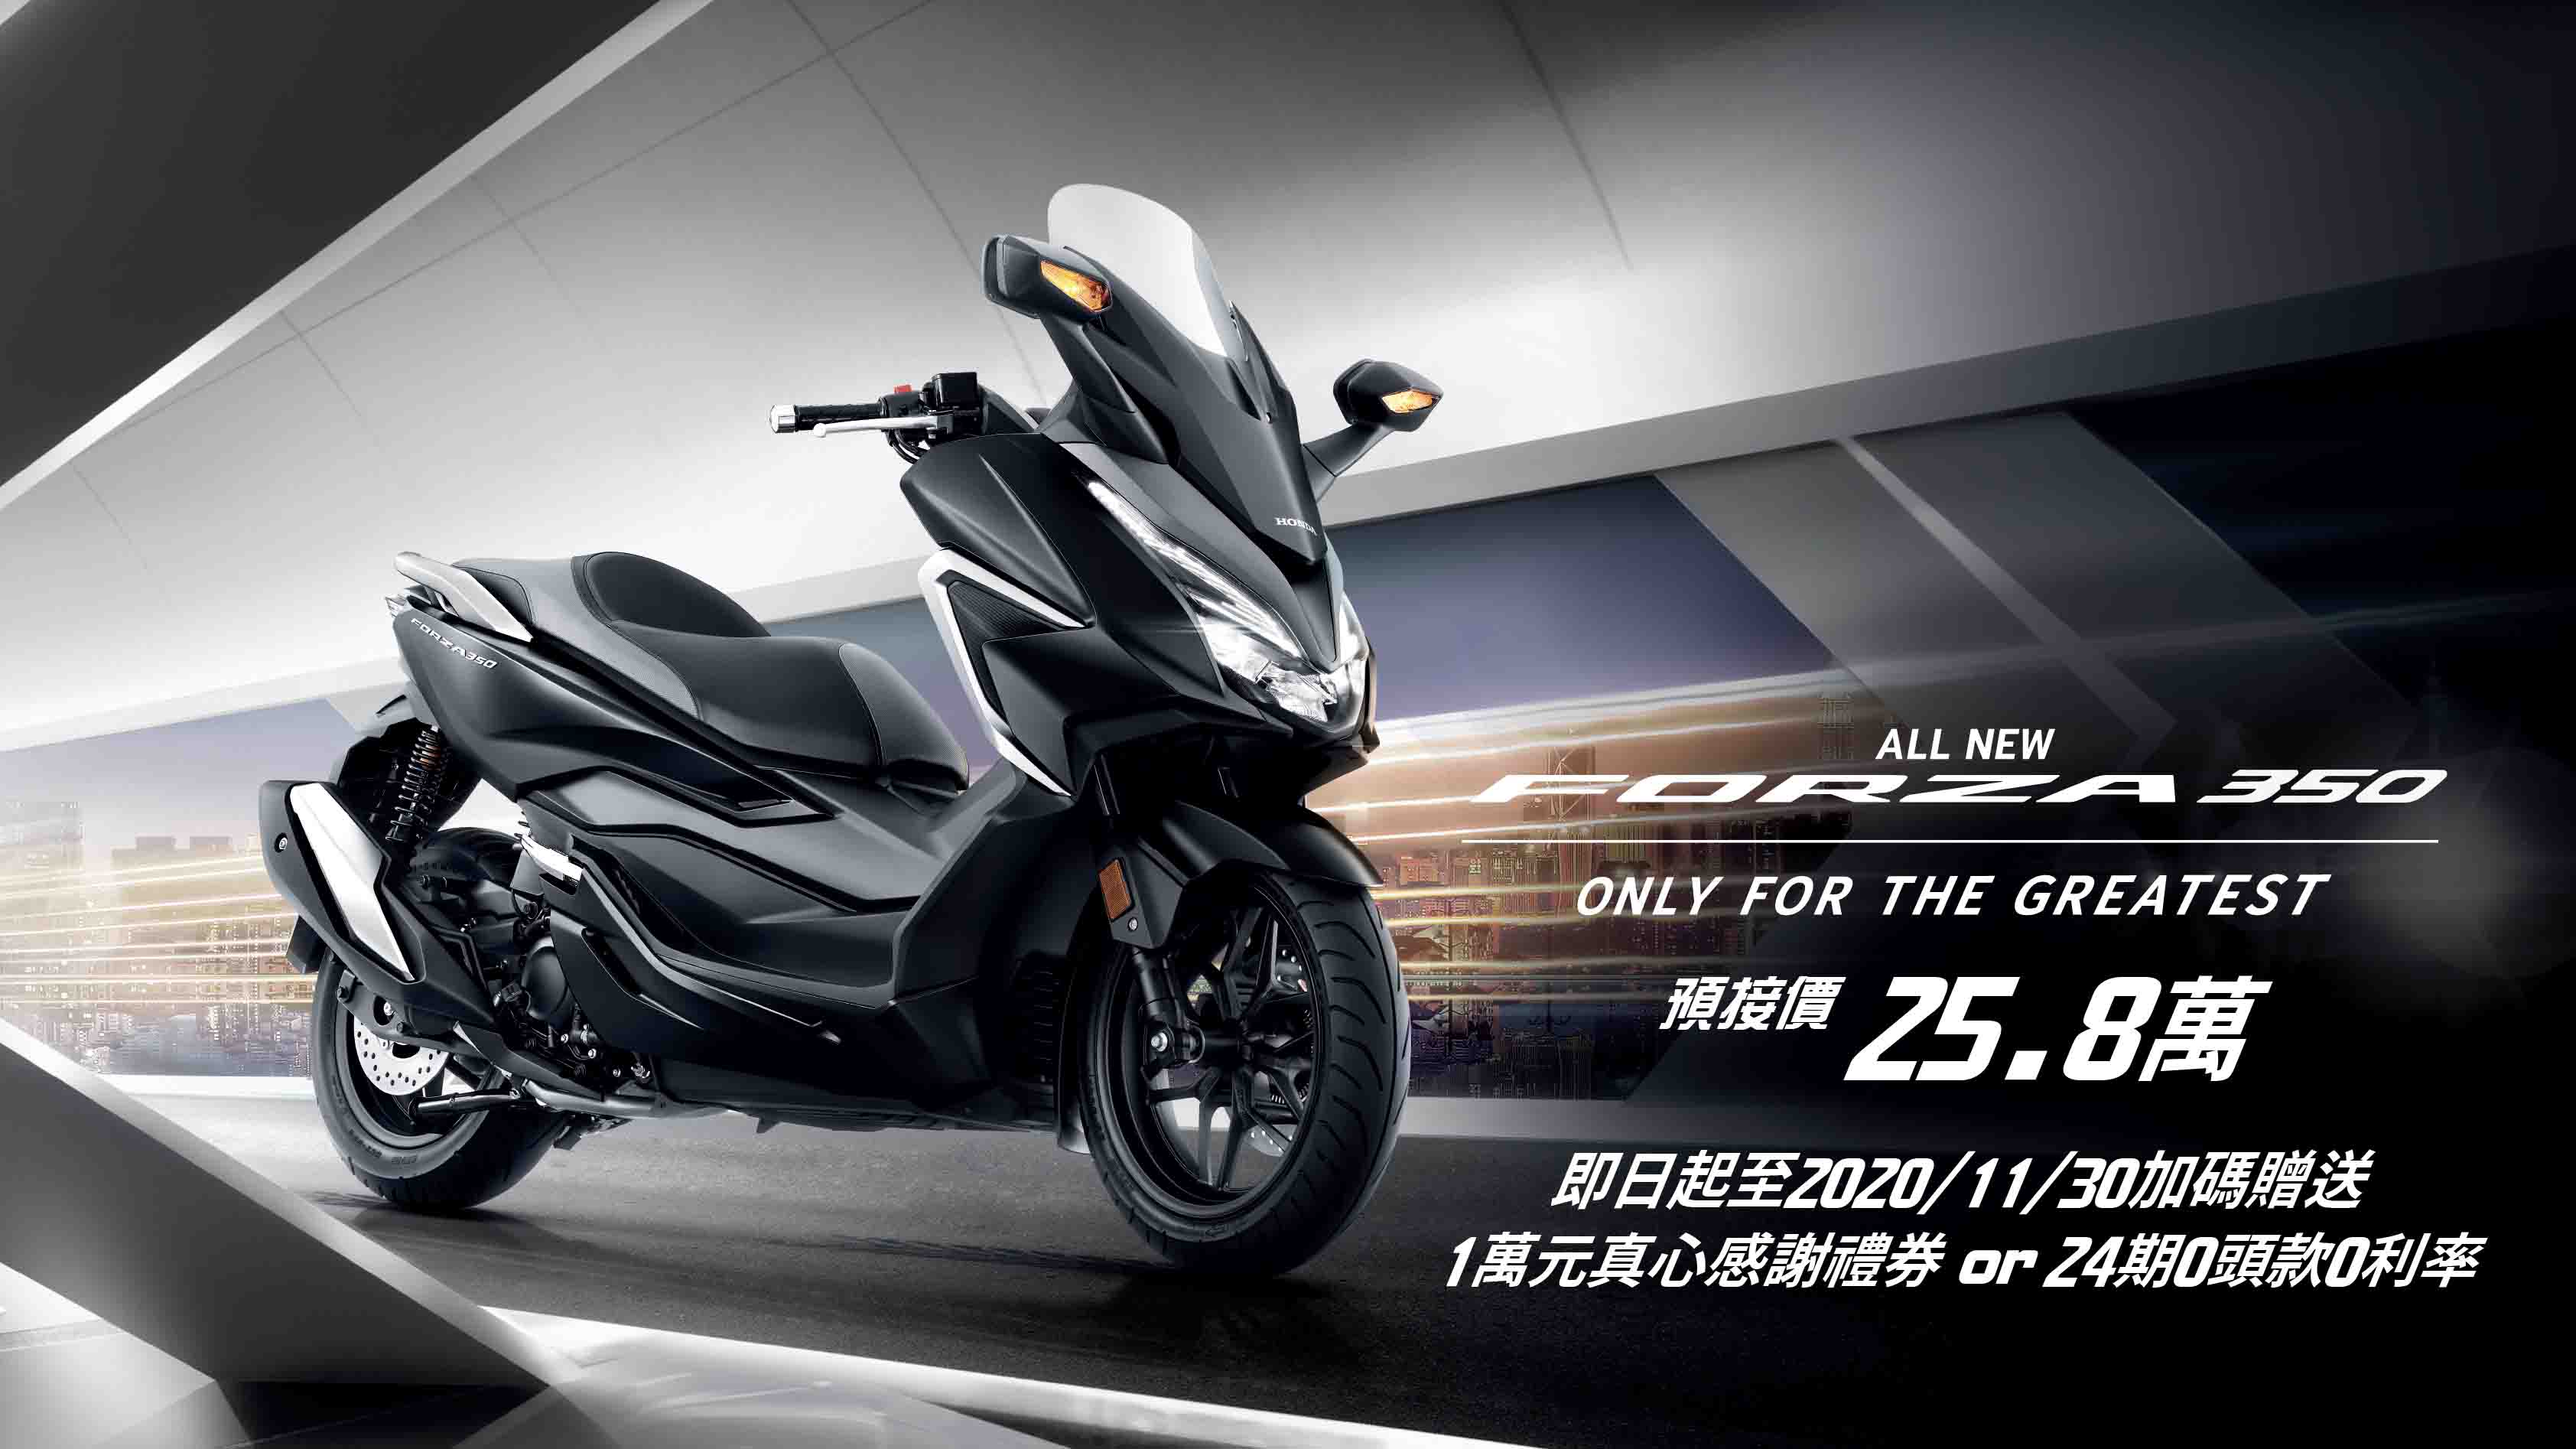 2021 年式 Honda Forza 350 預售價 25.8 萬，11 月底前享專屬優惠